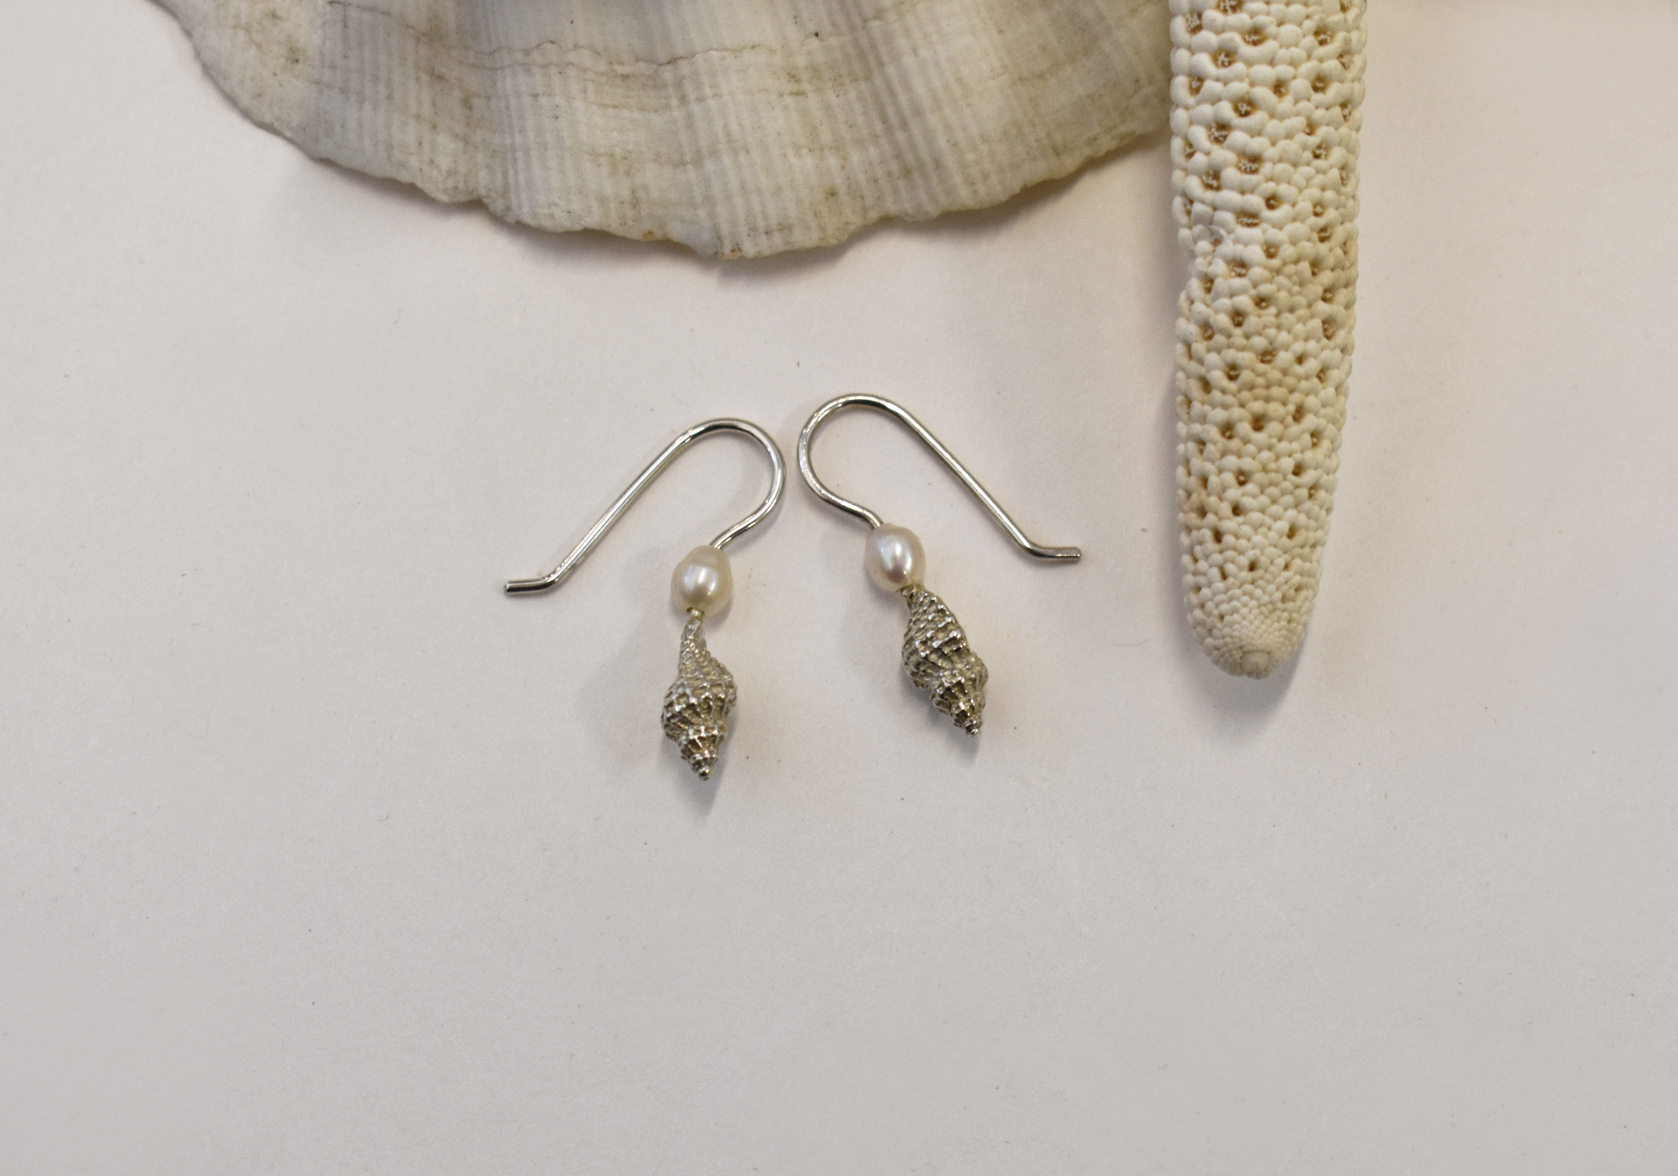 Baby conch p earrings 2 k